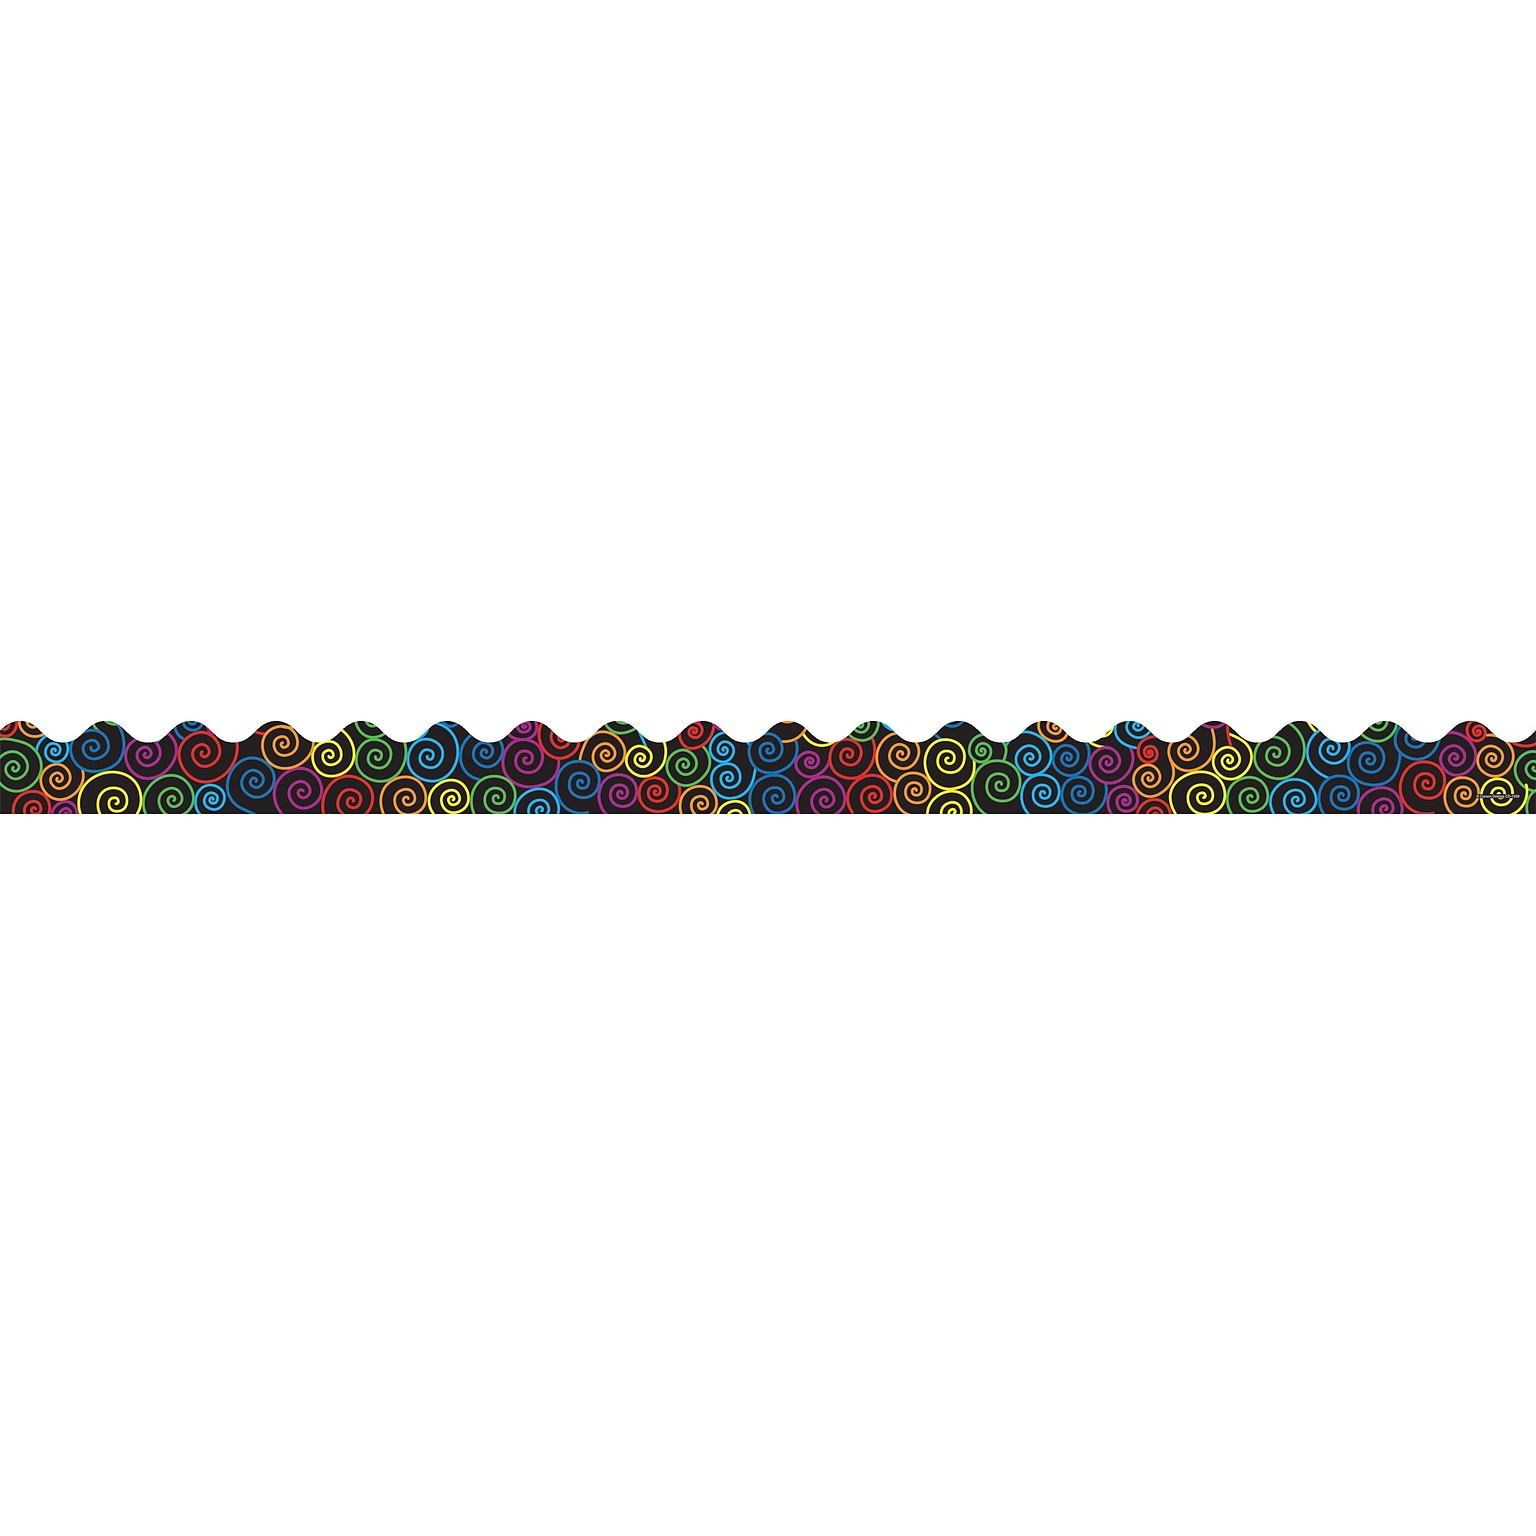 Carson-Dellosa 36 x 2.25 Scalloped, Rainbow Swirls Borders 13 Strips (1259)